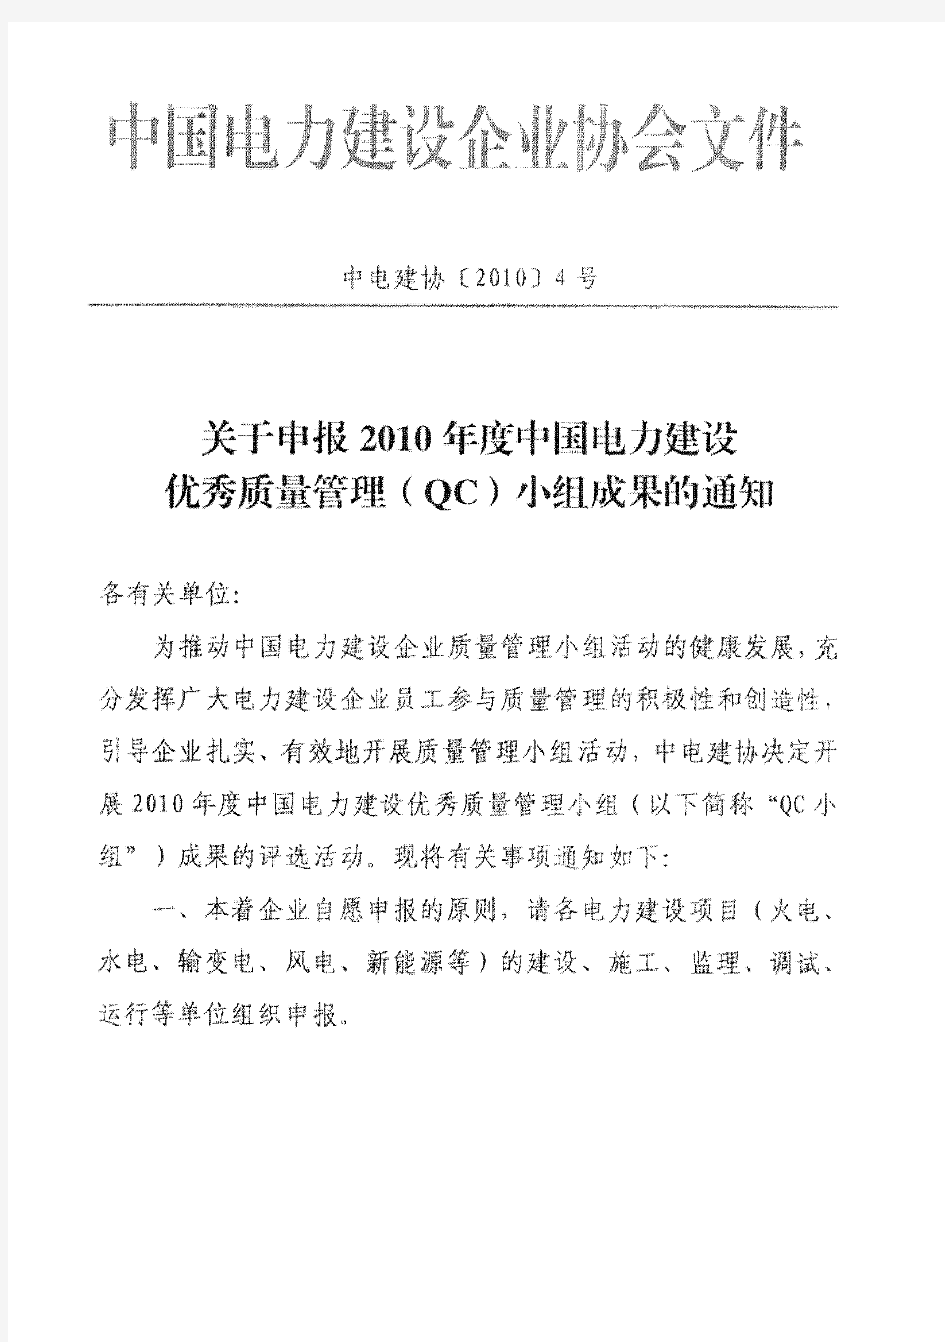 关于转发《关于申报2010年度中国电力建设优秀质量管理(QC)小组成果的通知》的通知附